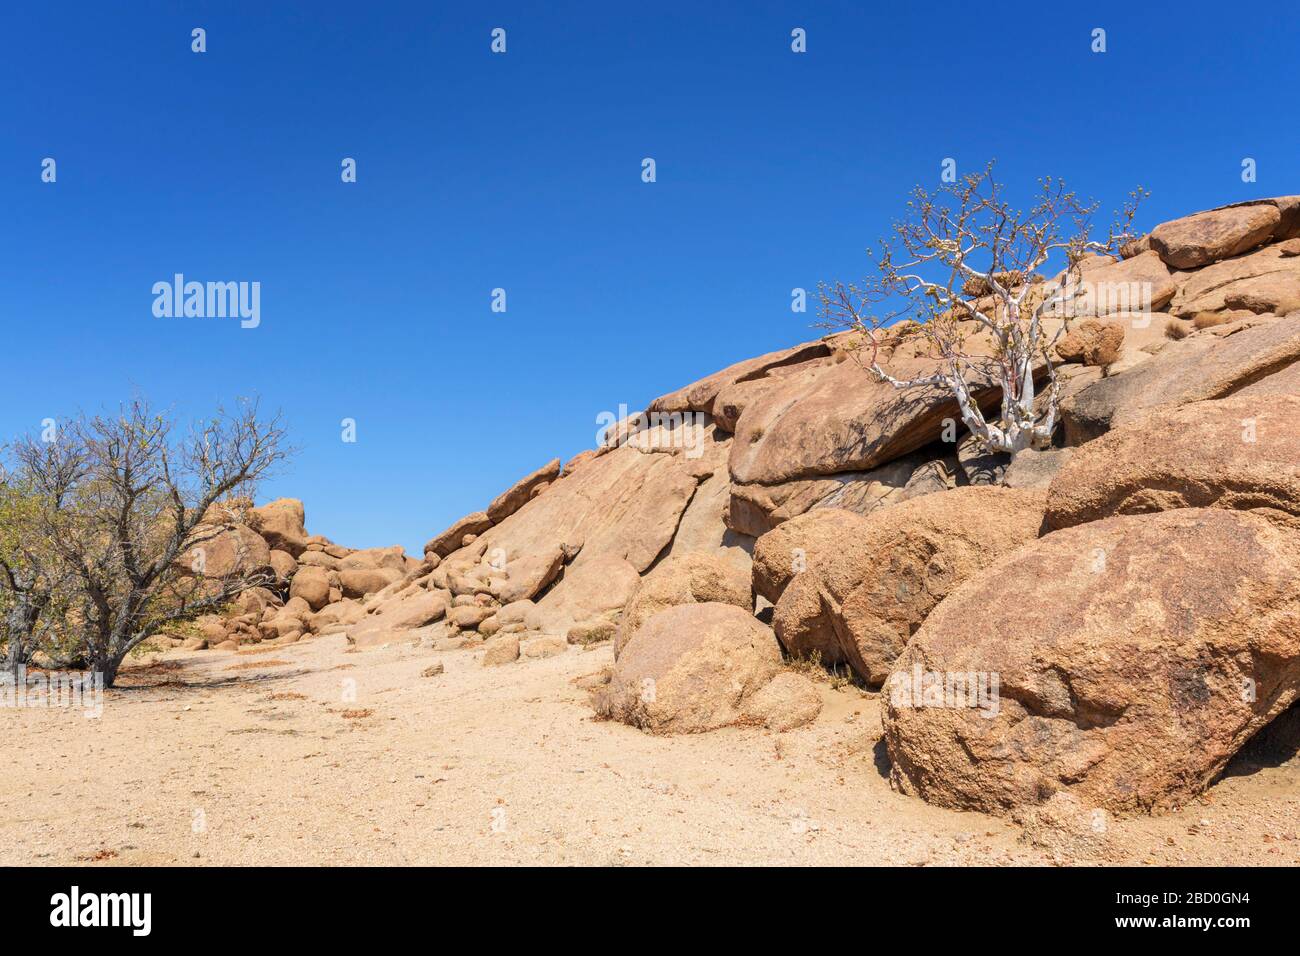 Végétation et formes rocheuses dans le désert, Damaraland, Namibie. Banque D'Images